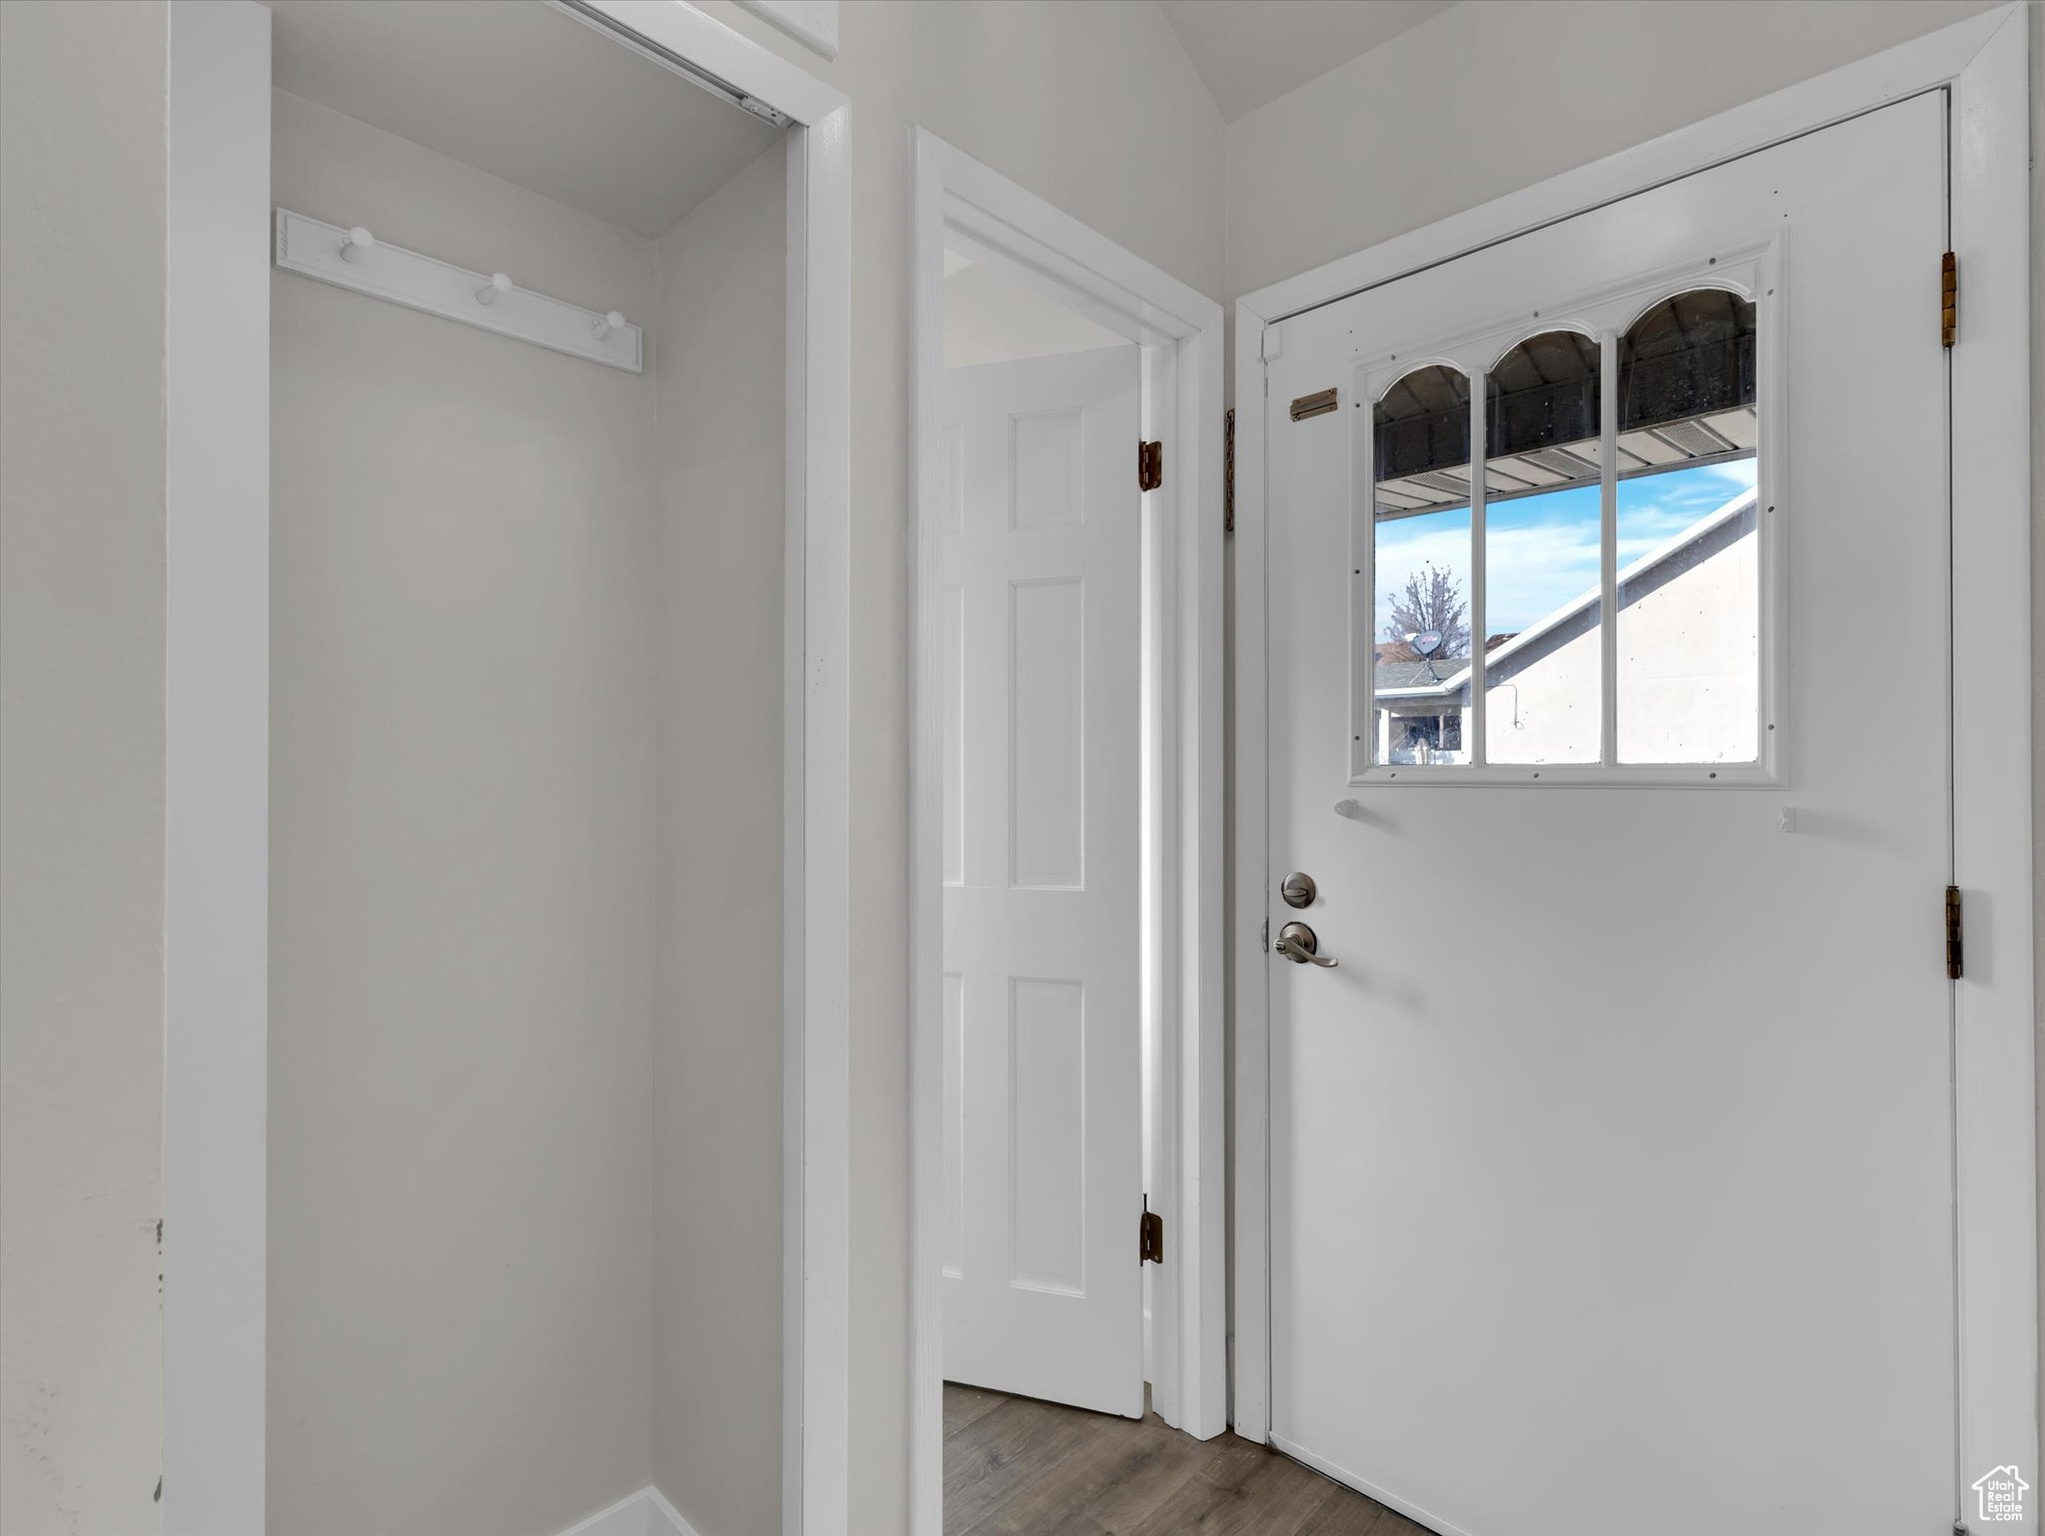 Doorway to outside featuring dark hardwood / wood-style floors